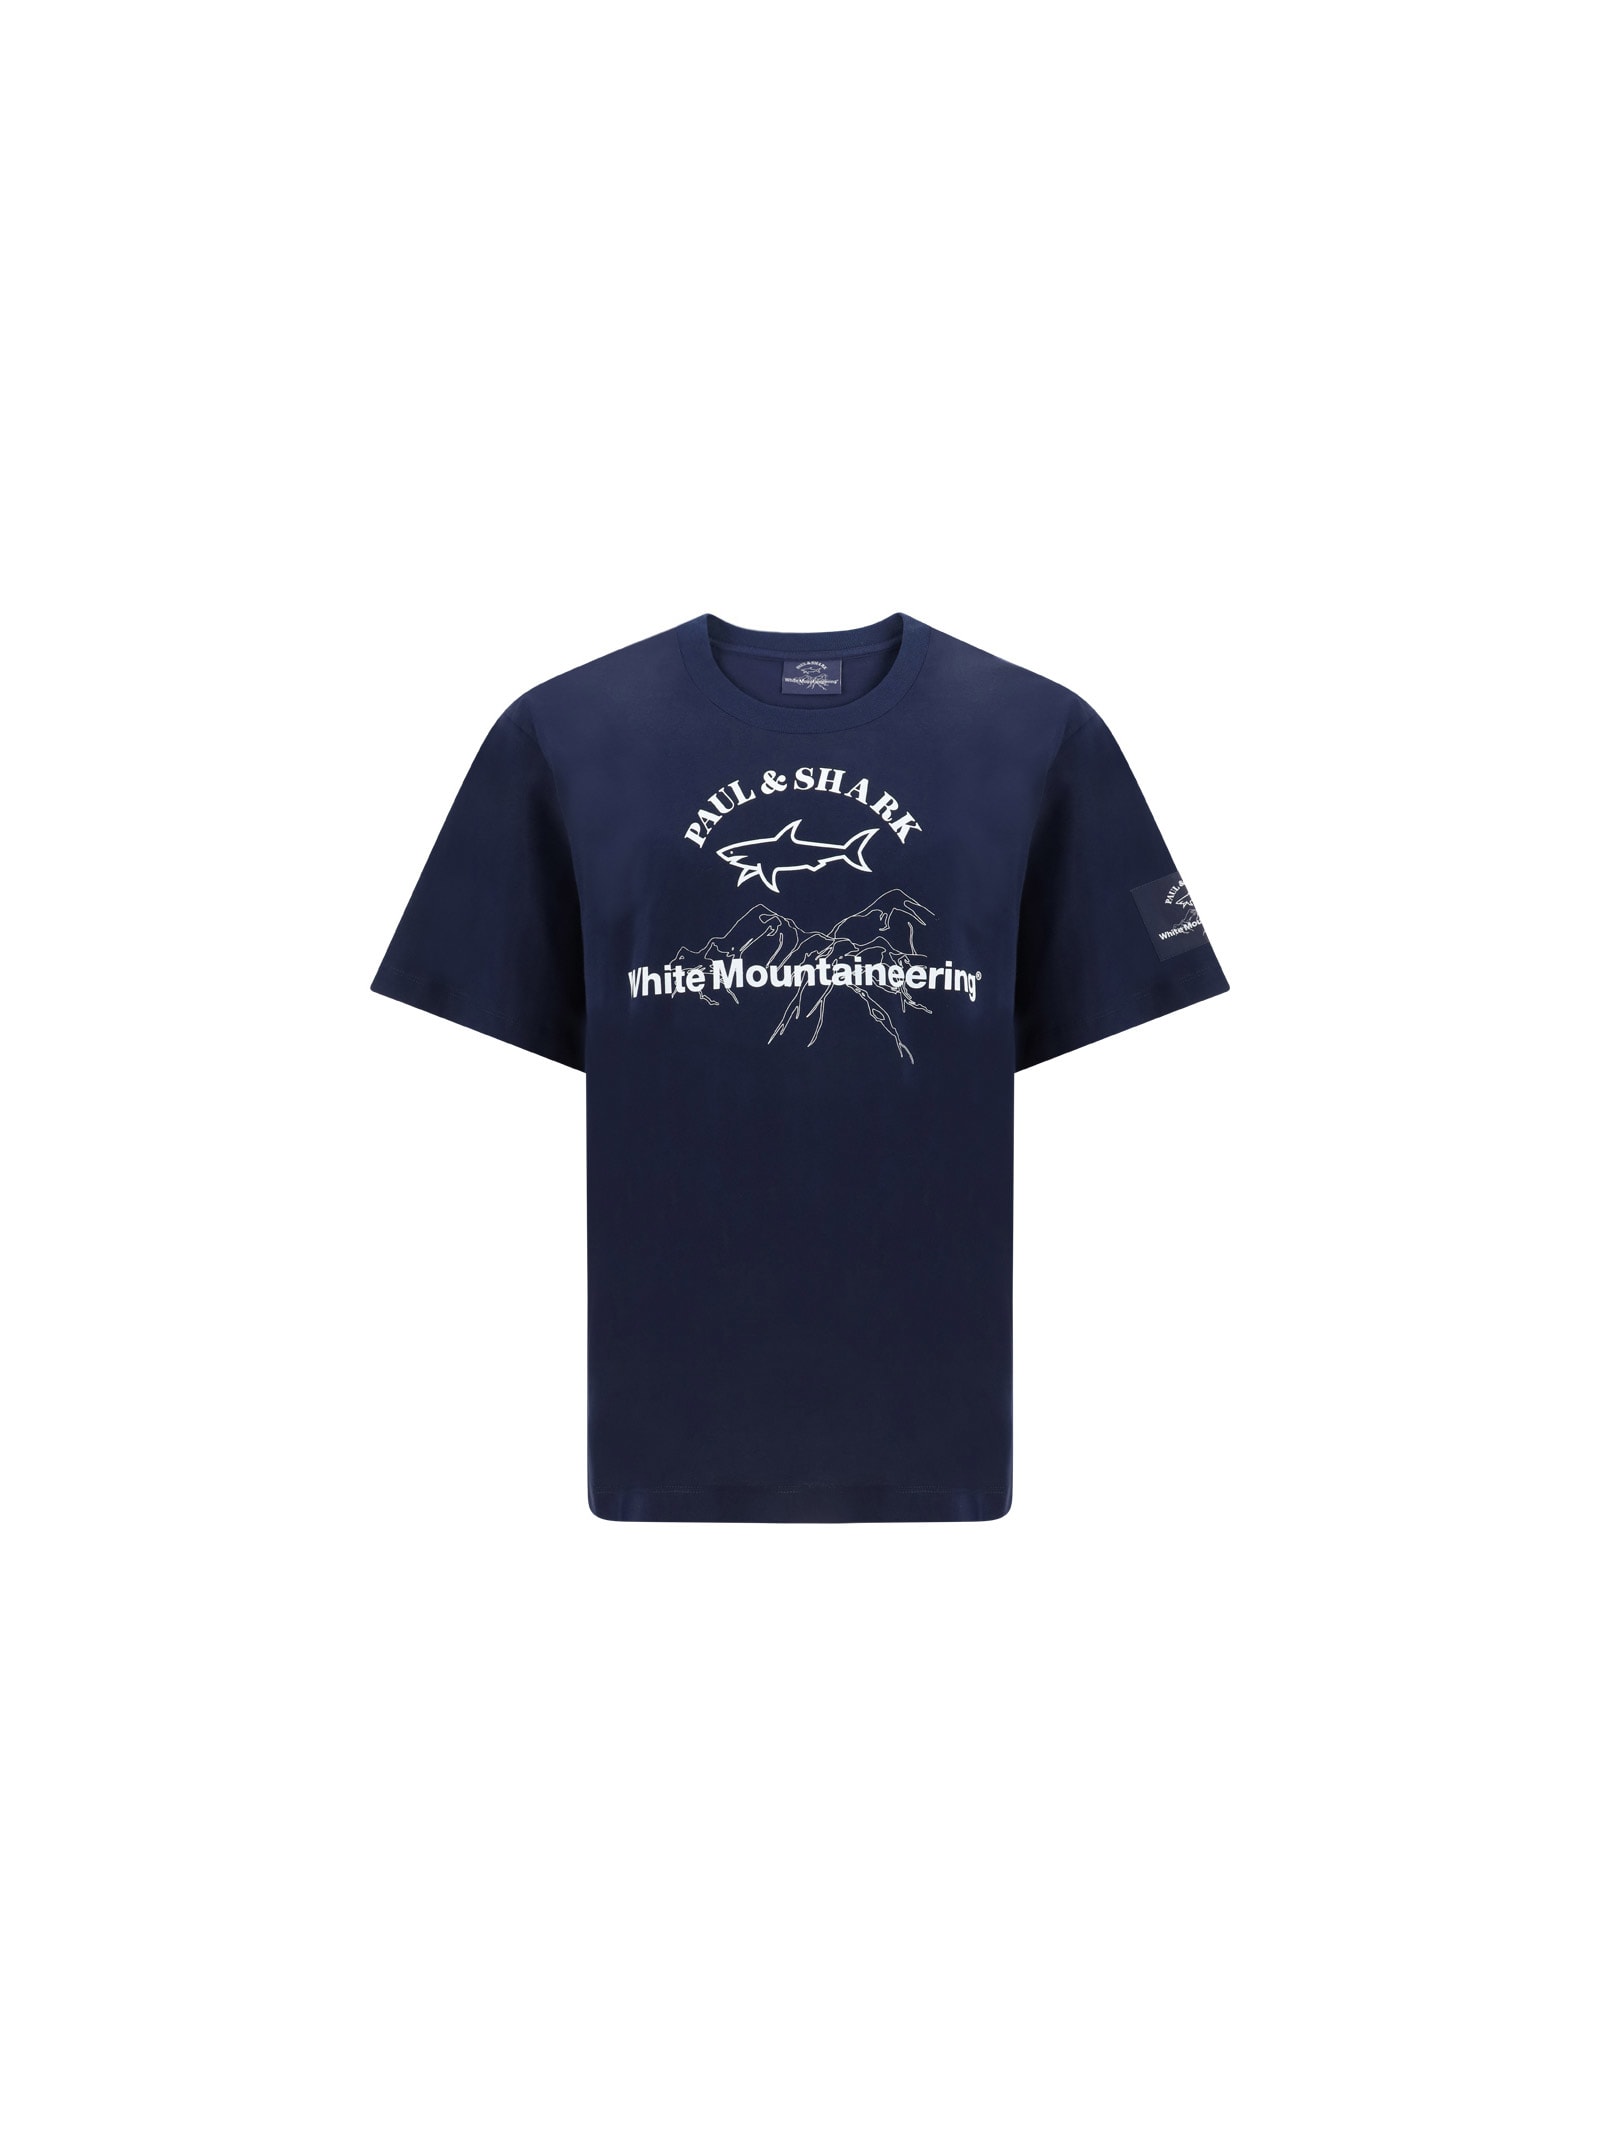 Paul & shark X White Mountaineering T-shirt